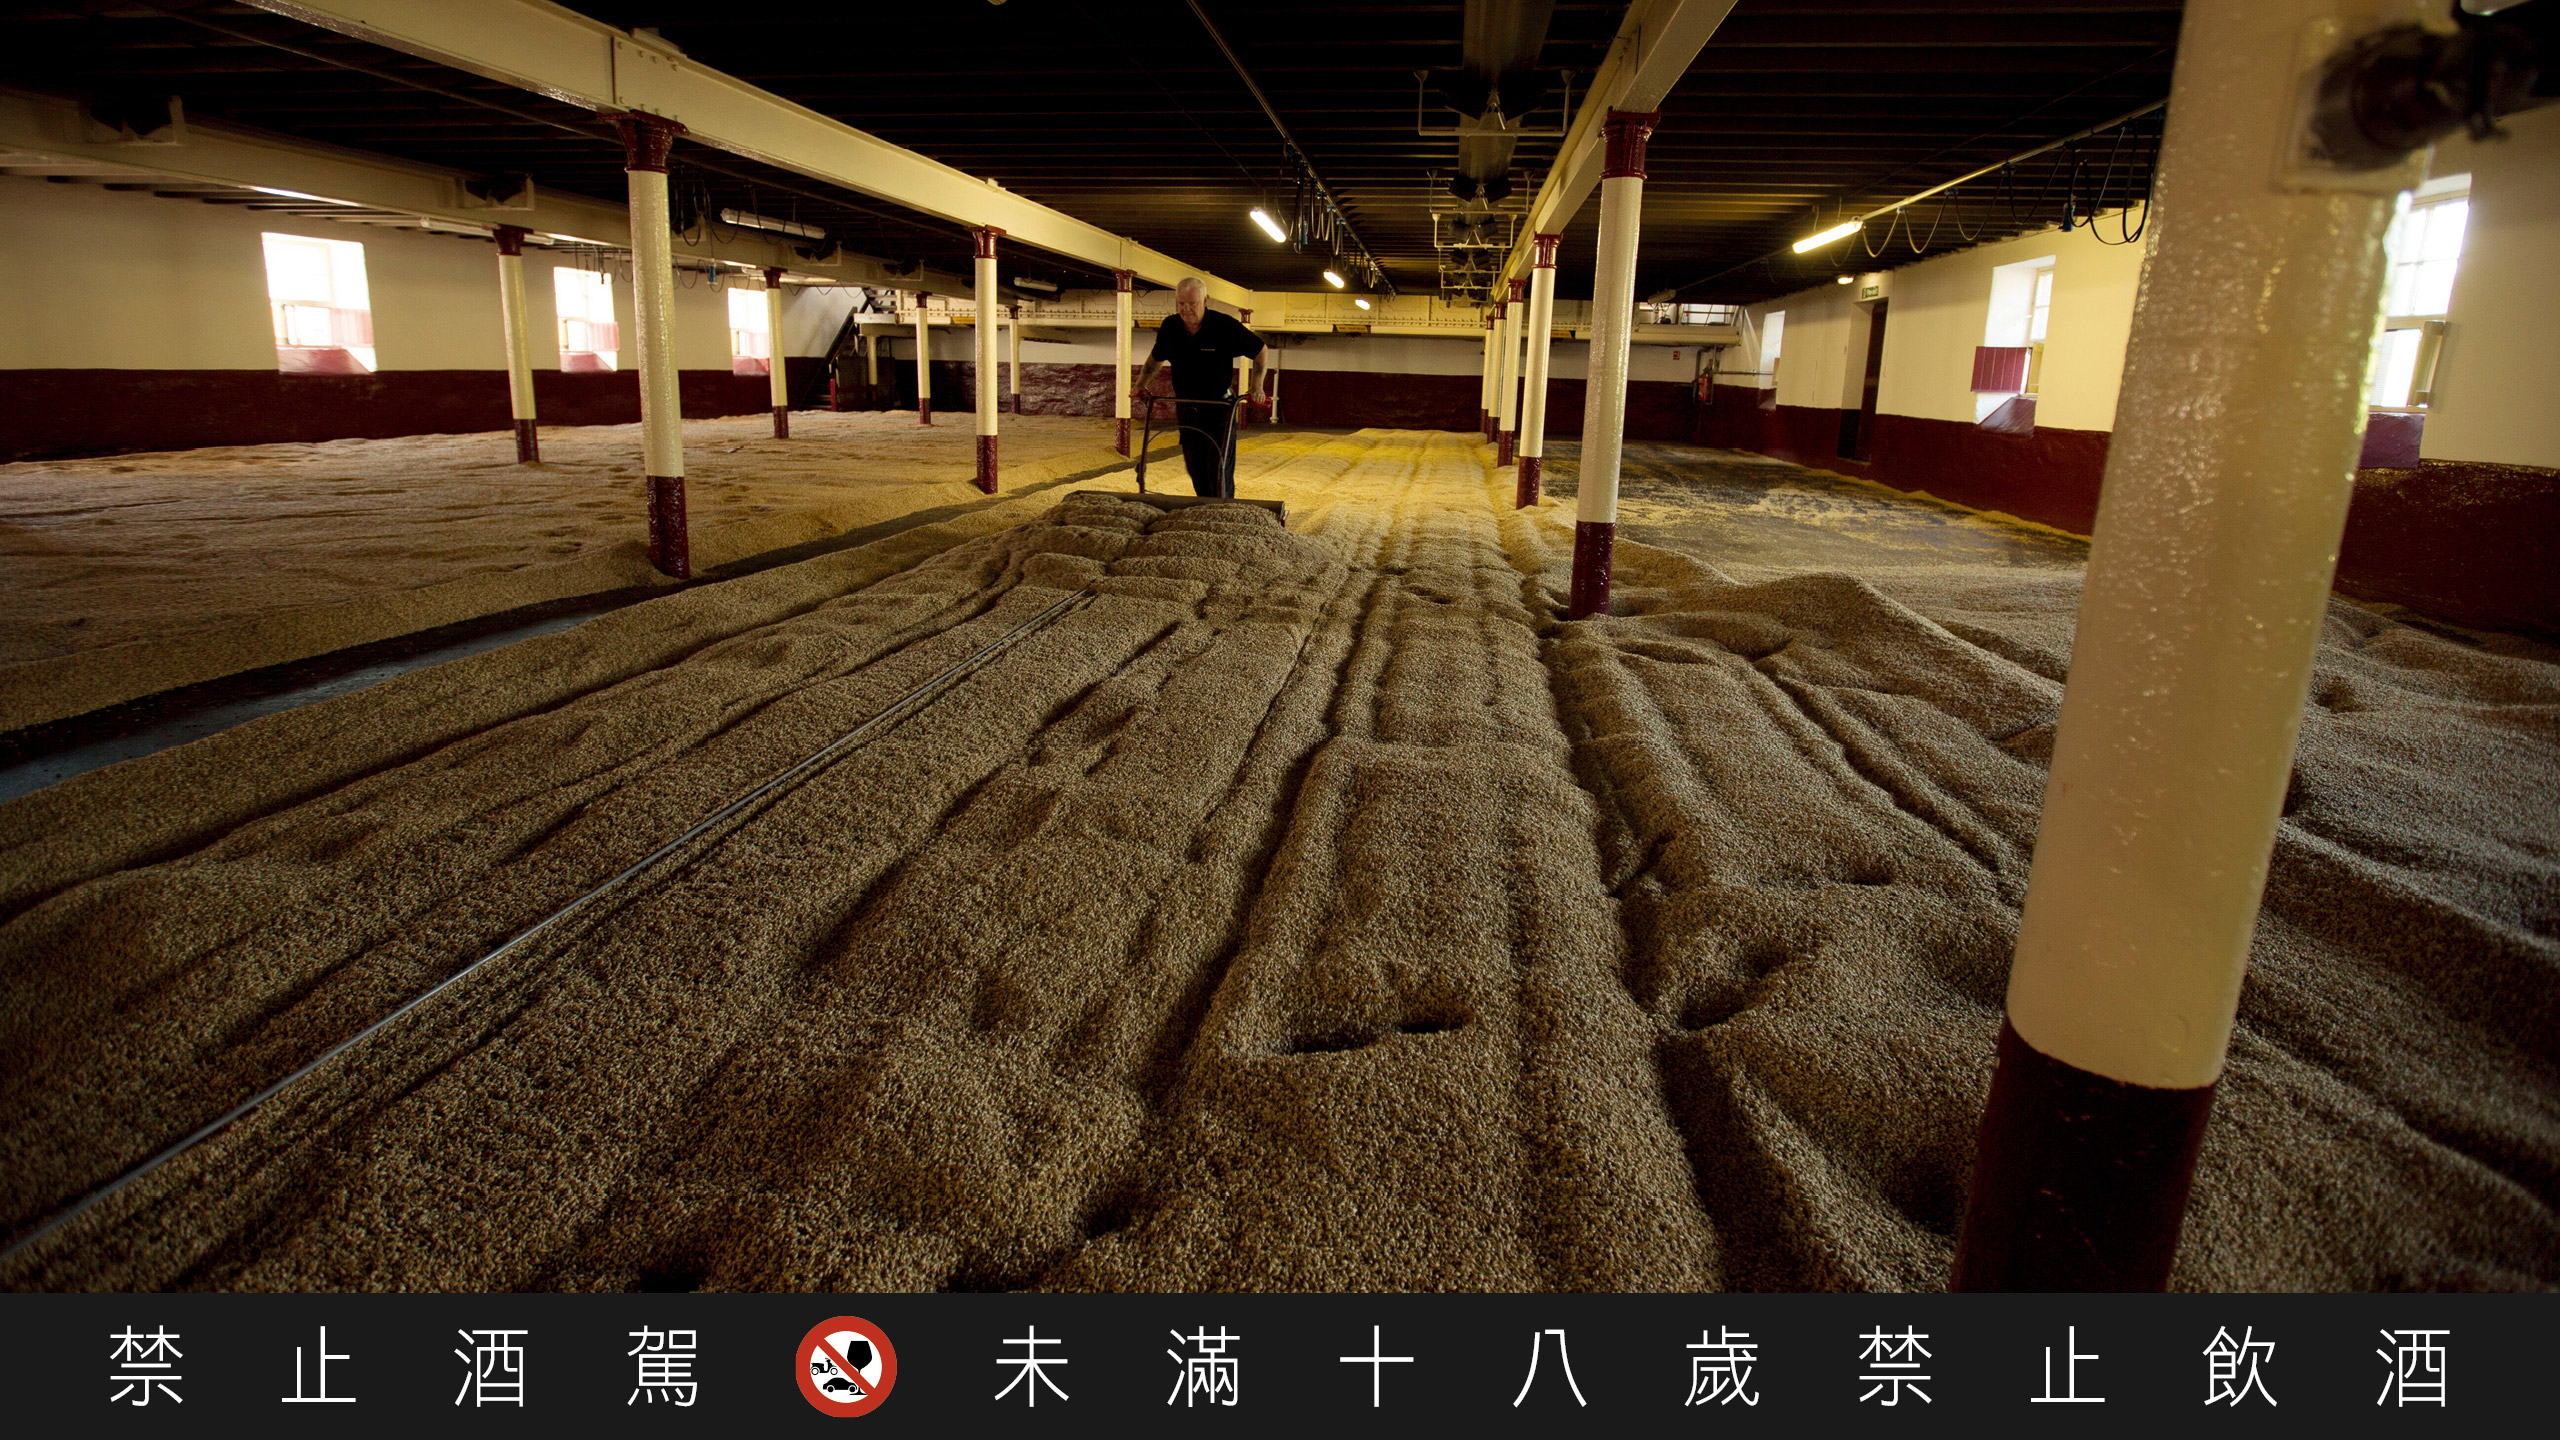 百富是蘇格蘭少數仍使用傳統地板翻麥方式的酒廠之一。麥師傅每天翻攪大麥四次，直到大麥發芽到能夠送入燻窯的程度為止。